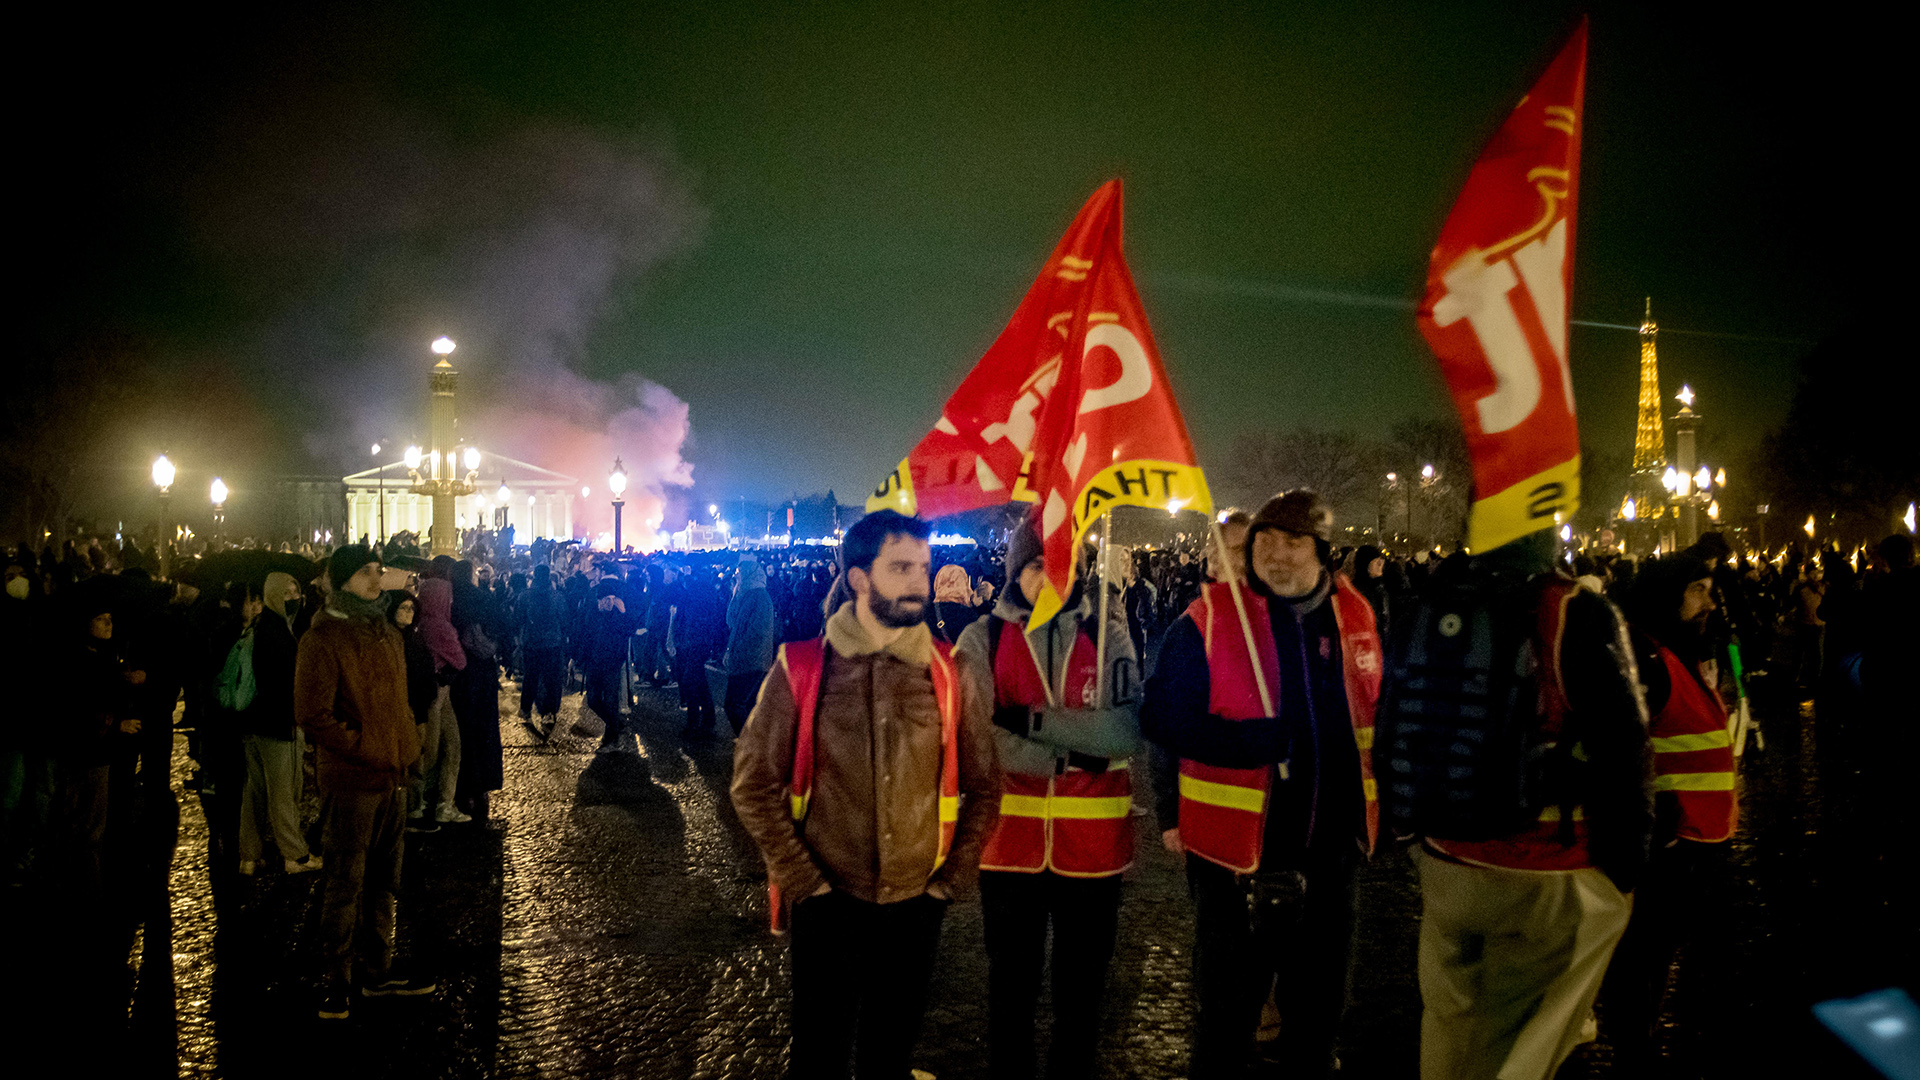 Weitere Proteste gegen Rentenreform in Frankreich geplant